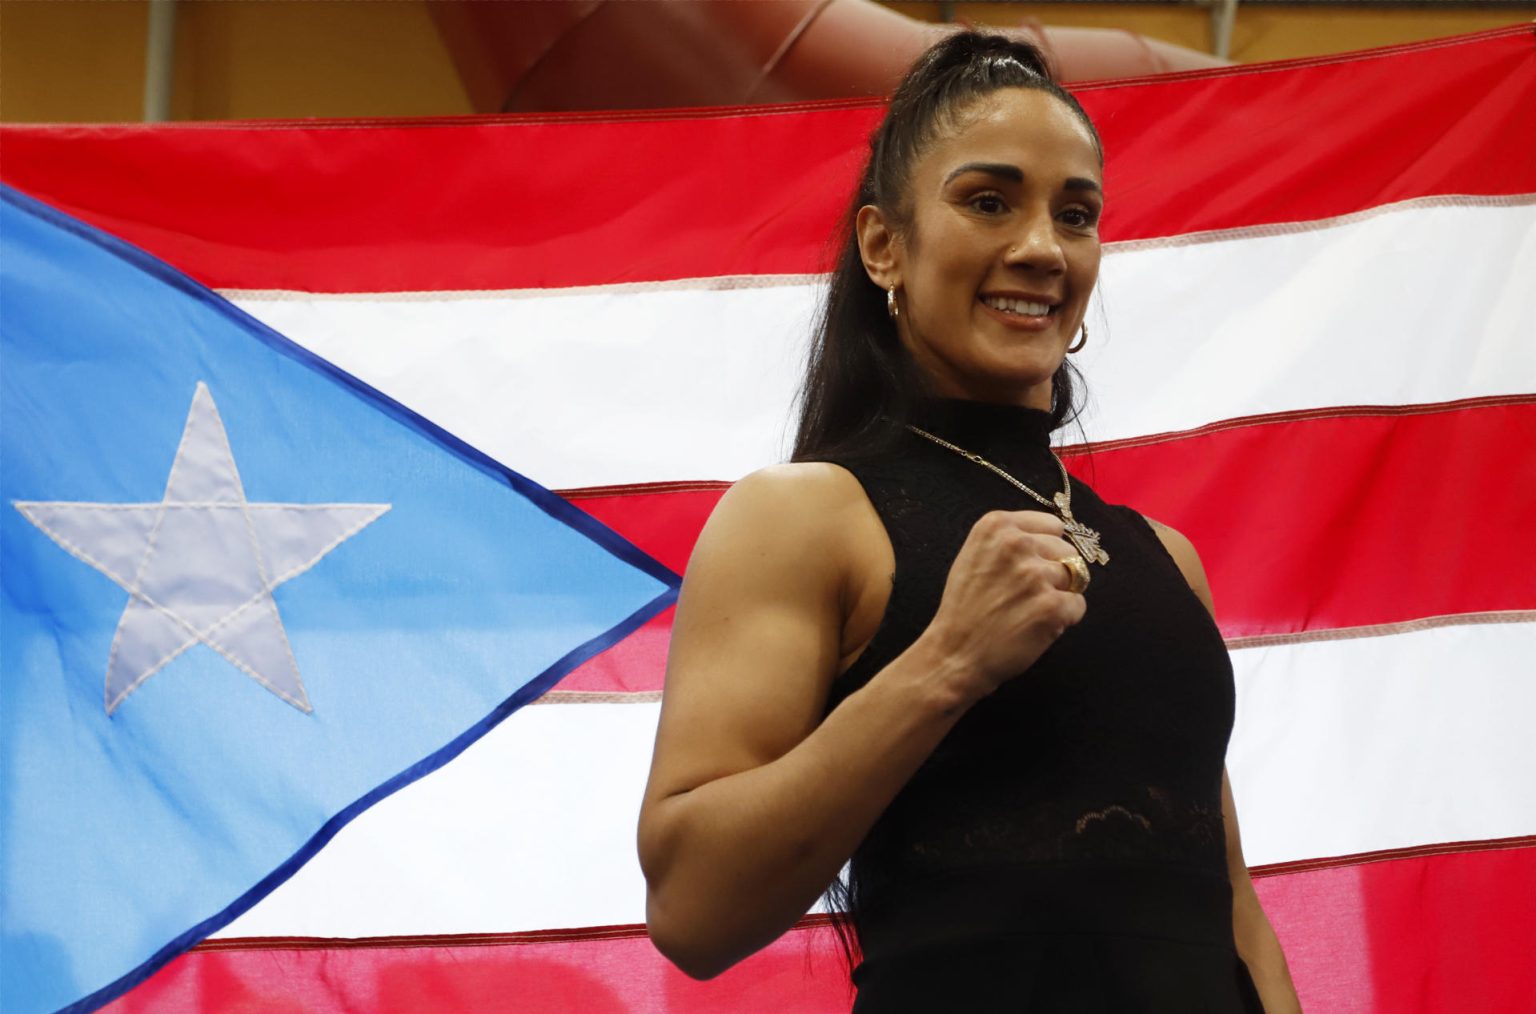 La boxeadora puertorriqueña Amanda Serrano posa durante un acto de homenaje a su trayectoria, en la sede del Departamento de Recreación y Deportes (DRD) en San Juan, Puerto Rico. Imagen de archivo. EFE/Thais Llorca